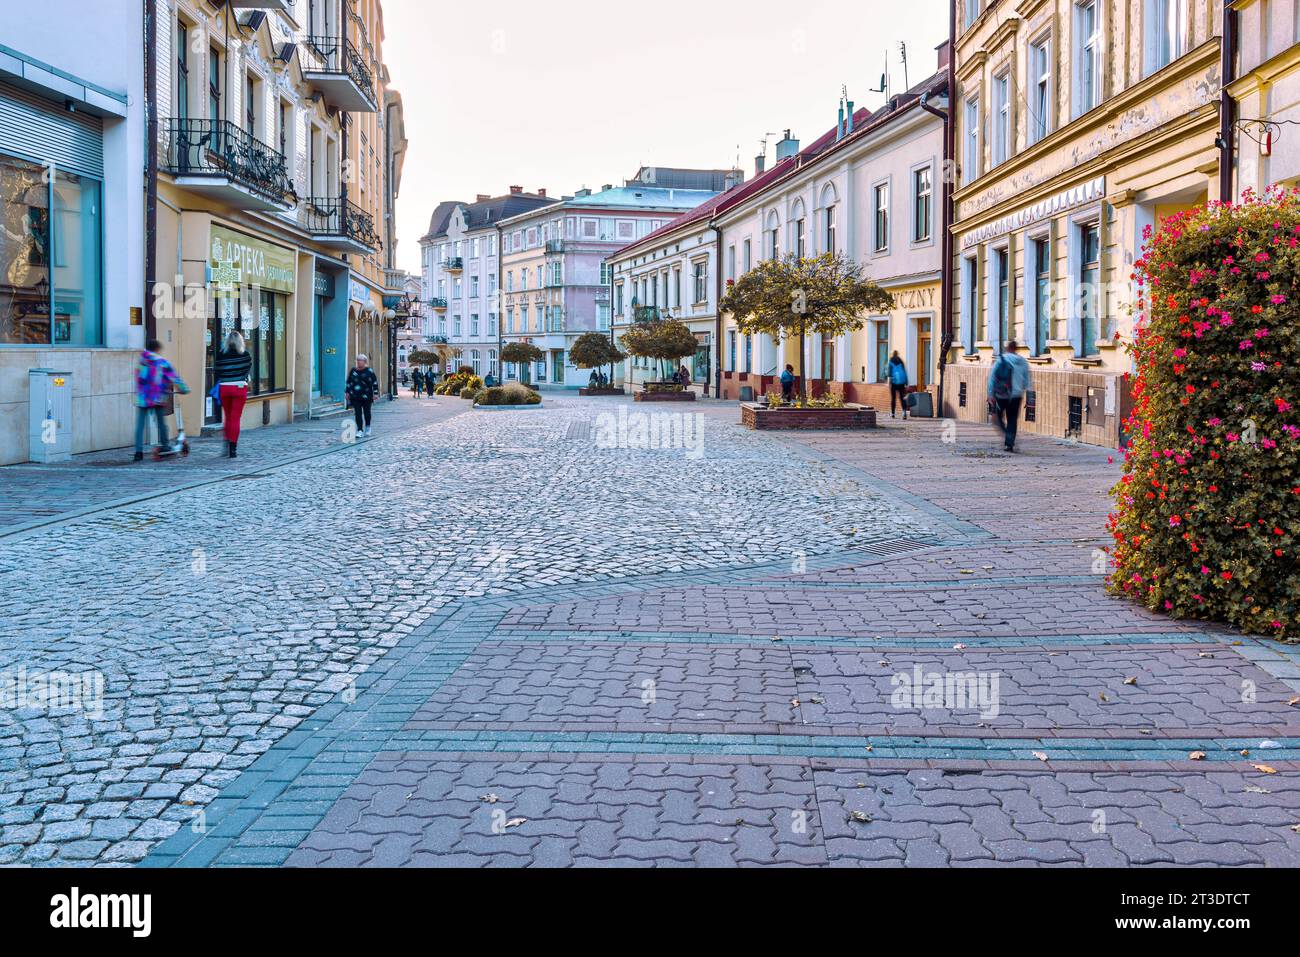 Die Stadt Tarnow ist nicht nur die einzigartige Schönheit der Altstadt, die mittelalterliche Straßen, architektonische Meisterwerke der Gotik, Polen, erhalten hat. Stockfoto